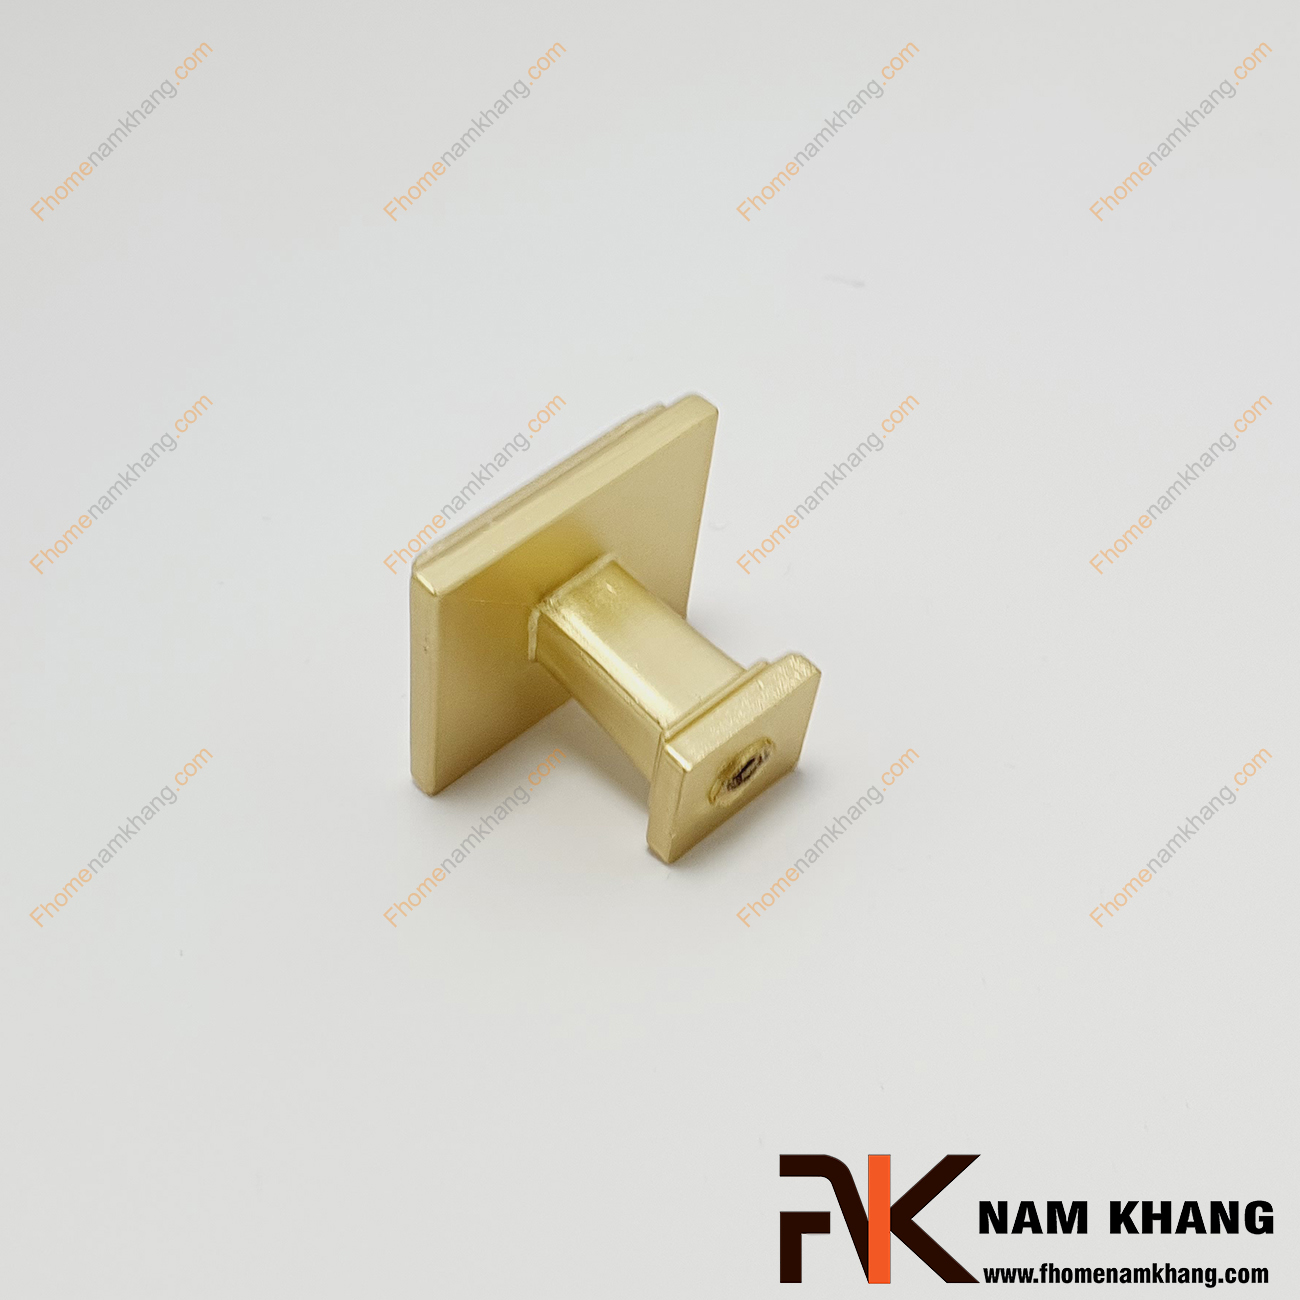 Núm cửa tủ màu vàng NK230N-VM có thiết kế đơn giản từ hợp kim cao cấp với khuôn dạng đầu vuông và đế vuông đứng. Sản phẩm giúp thực hiện thao tác đóng mở cánh cửa tủ trở nên dễ dàng và thuận tiện. 